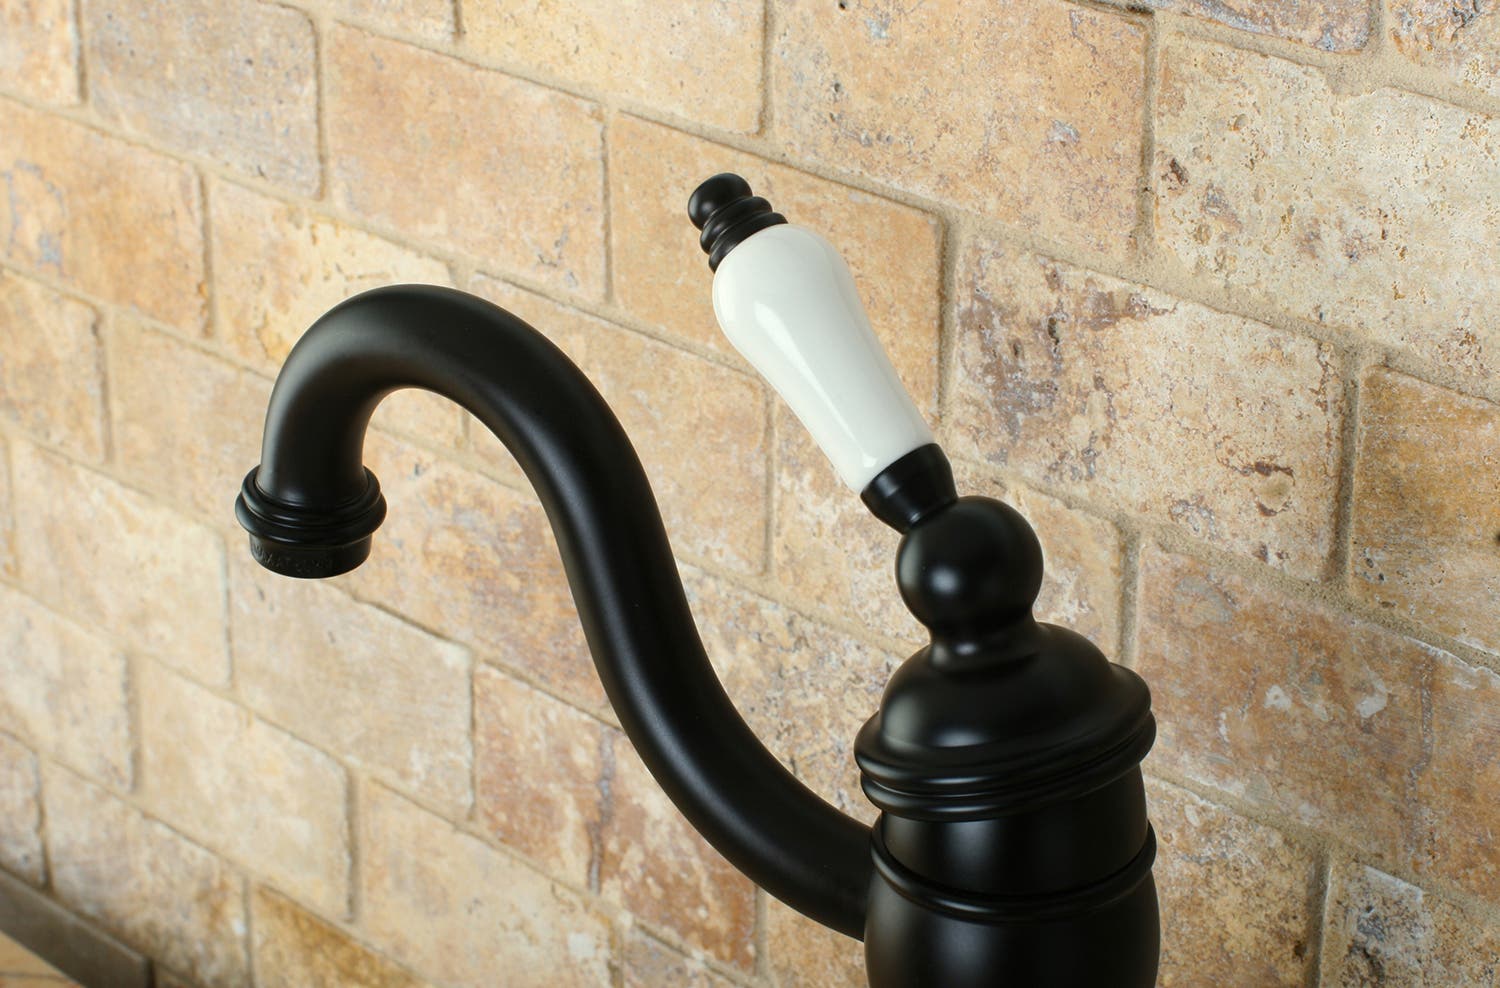 Faucet Feature 13: Profile of the KB1425PL Lavatory Faucet